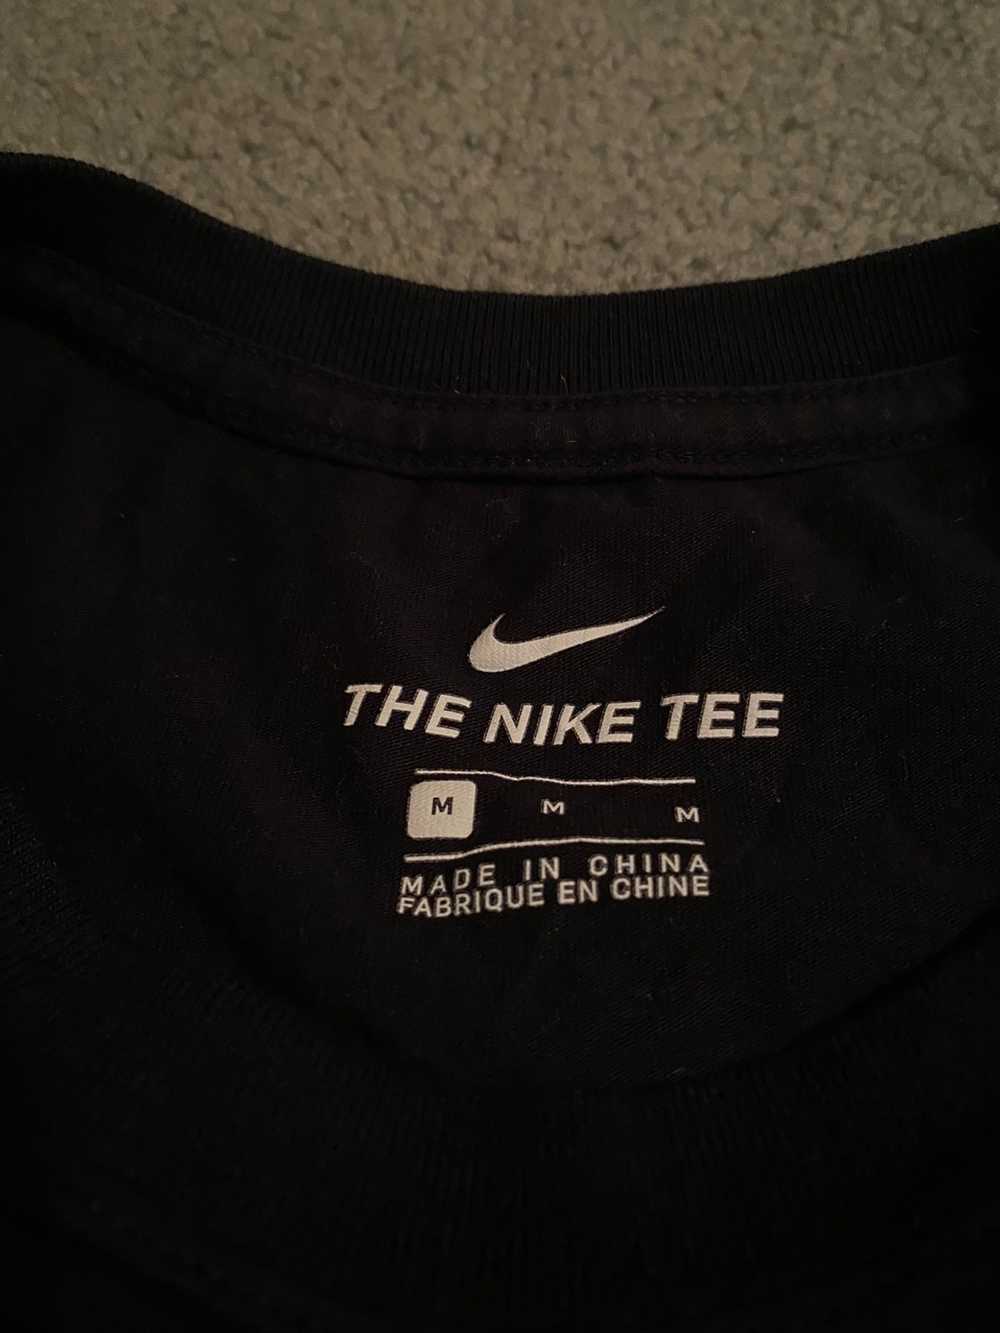 Nike Nike Tee Shirt - image 2